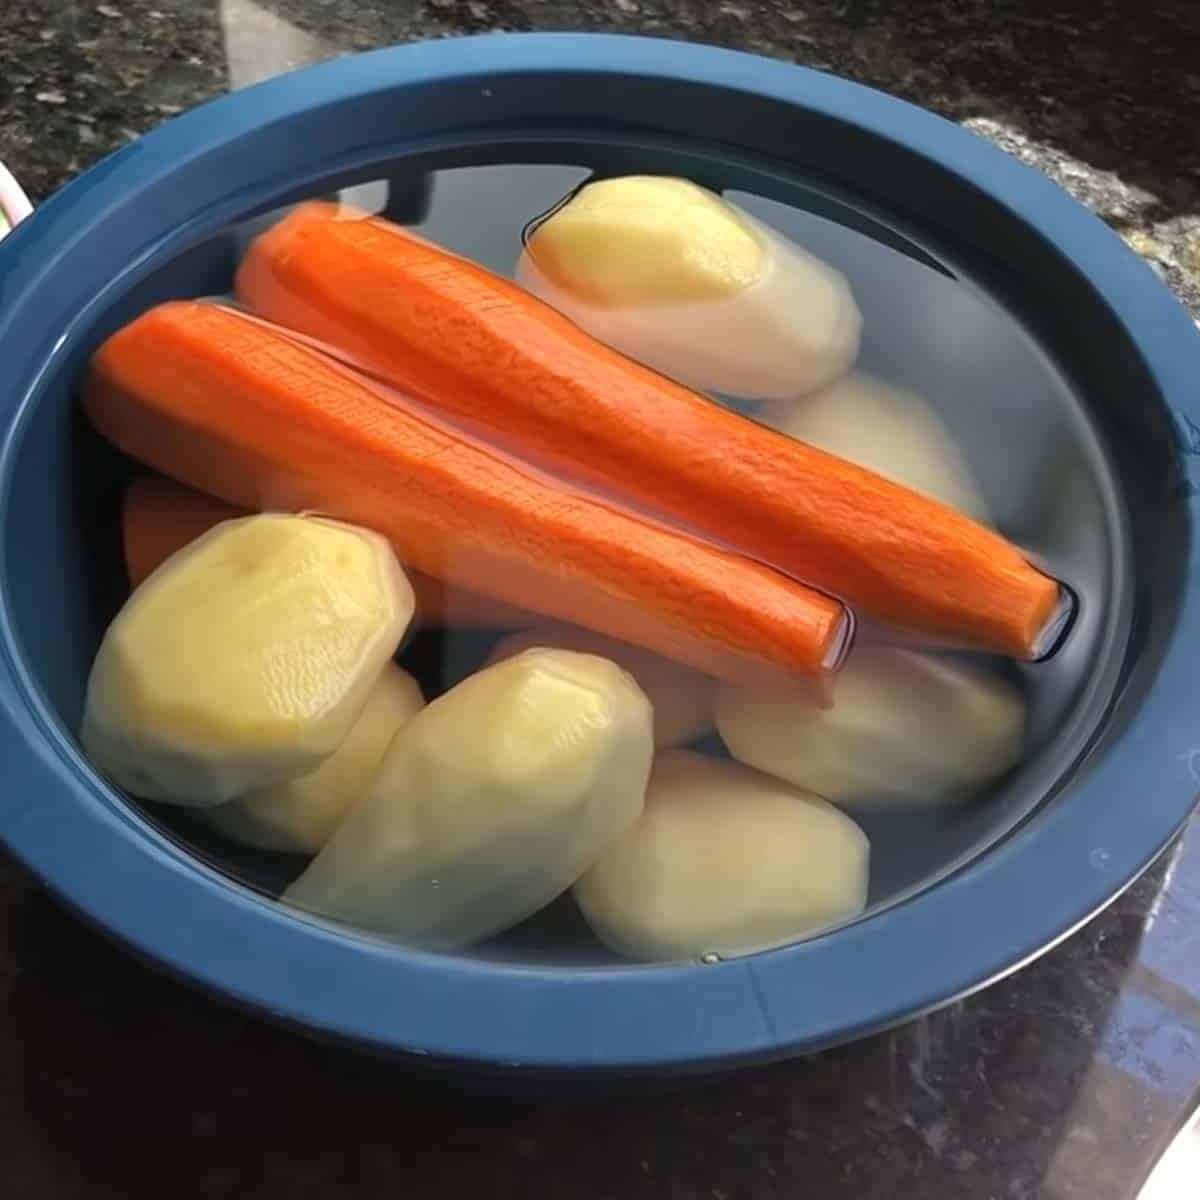 batatas e cenouras de molho